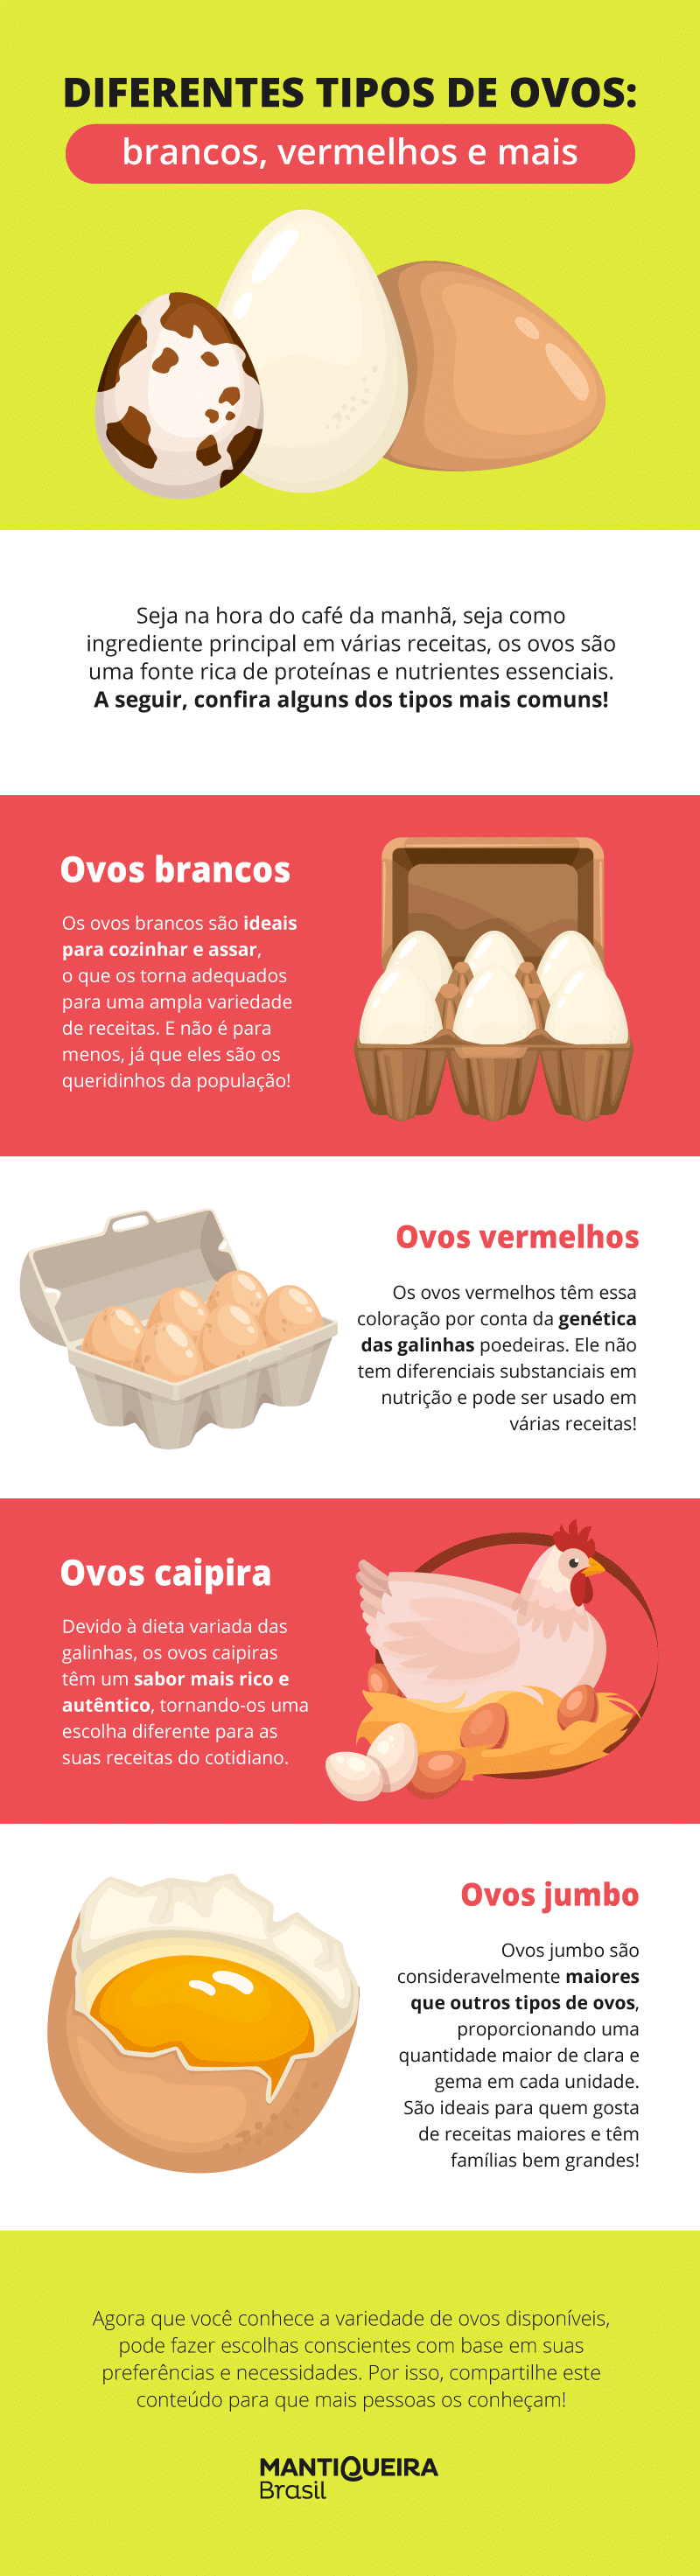 conheça os diferentes tipos de ovos e suas características neste infográfico!